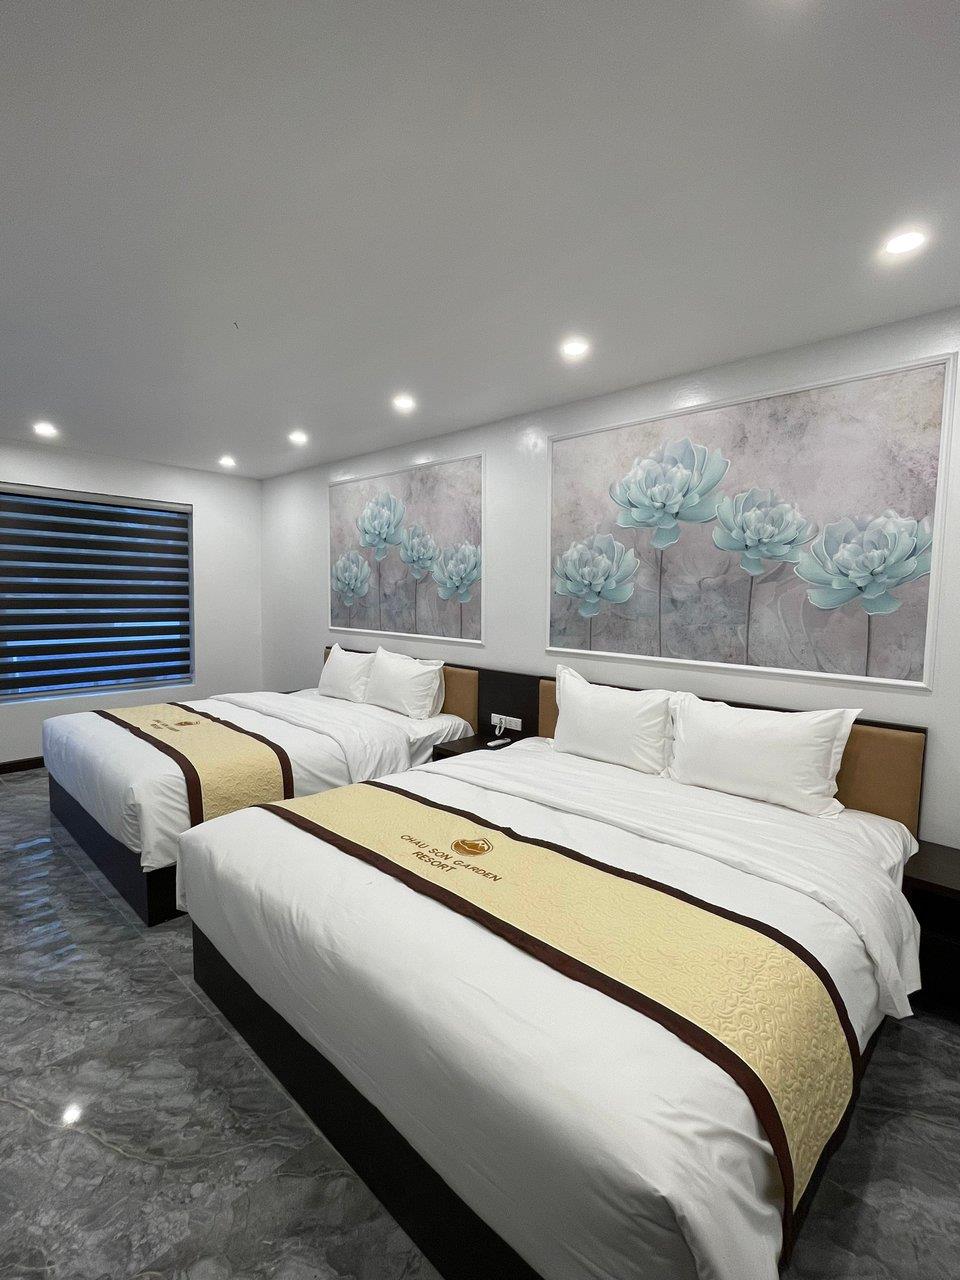 Châu Sơn Villa 1 ngủ 2 giường cỡ king - Châu Sơn Garden Resort